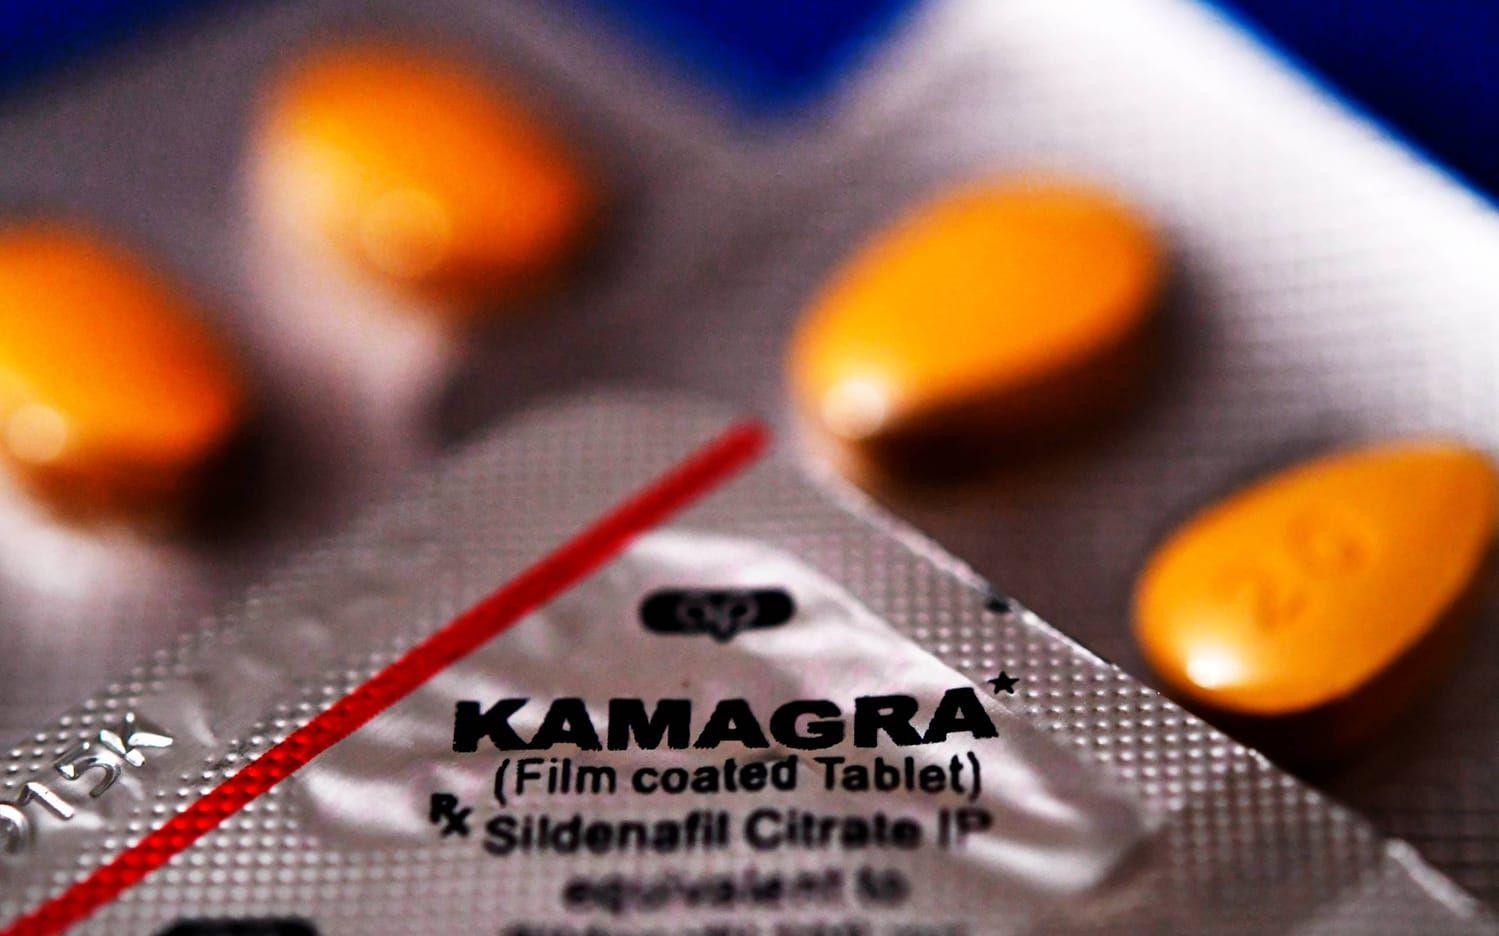 GP kan nu avslöja att ett globalt smugglingsnätverk står bakom de tabletter som sålts på Kamagradirekt. Bild: Stefan Berg.